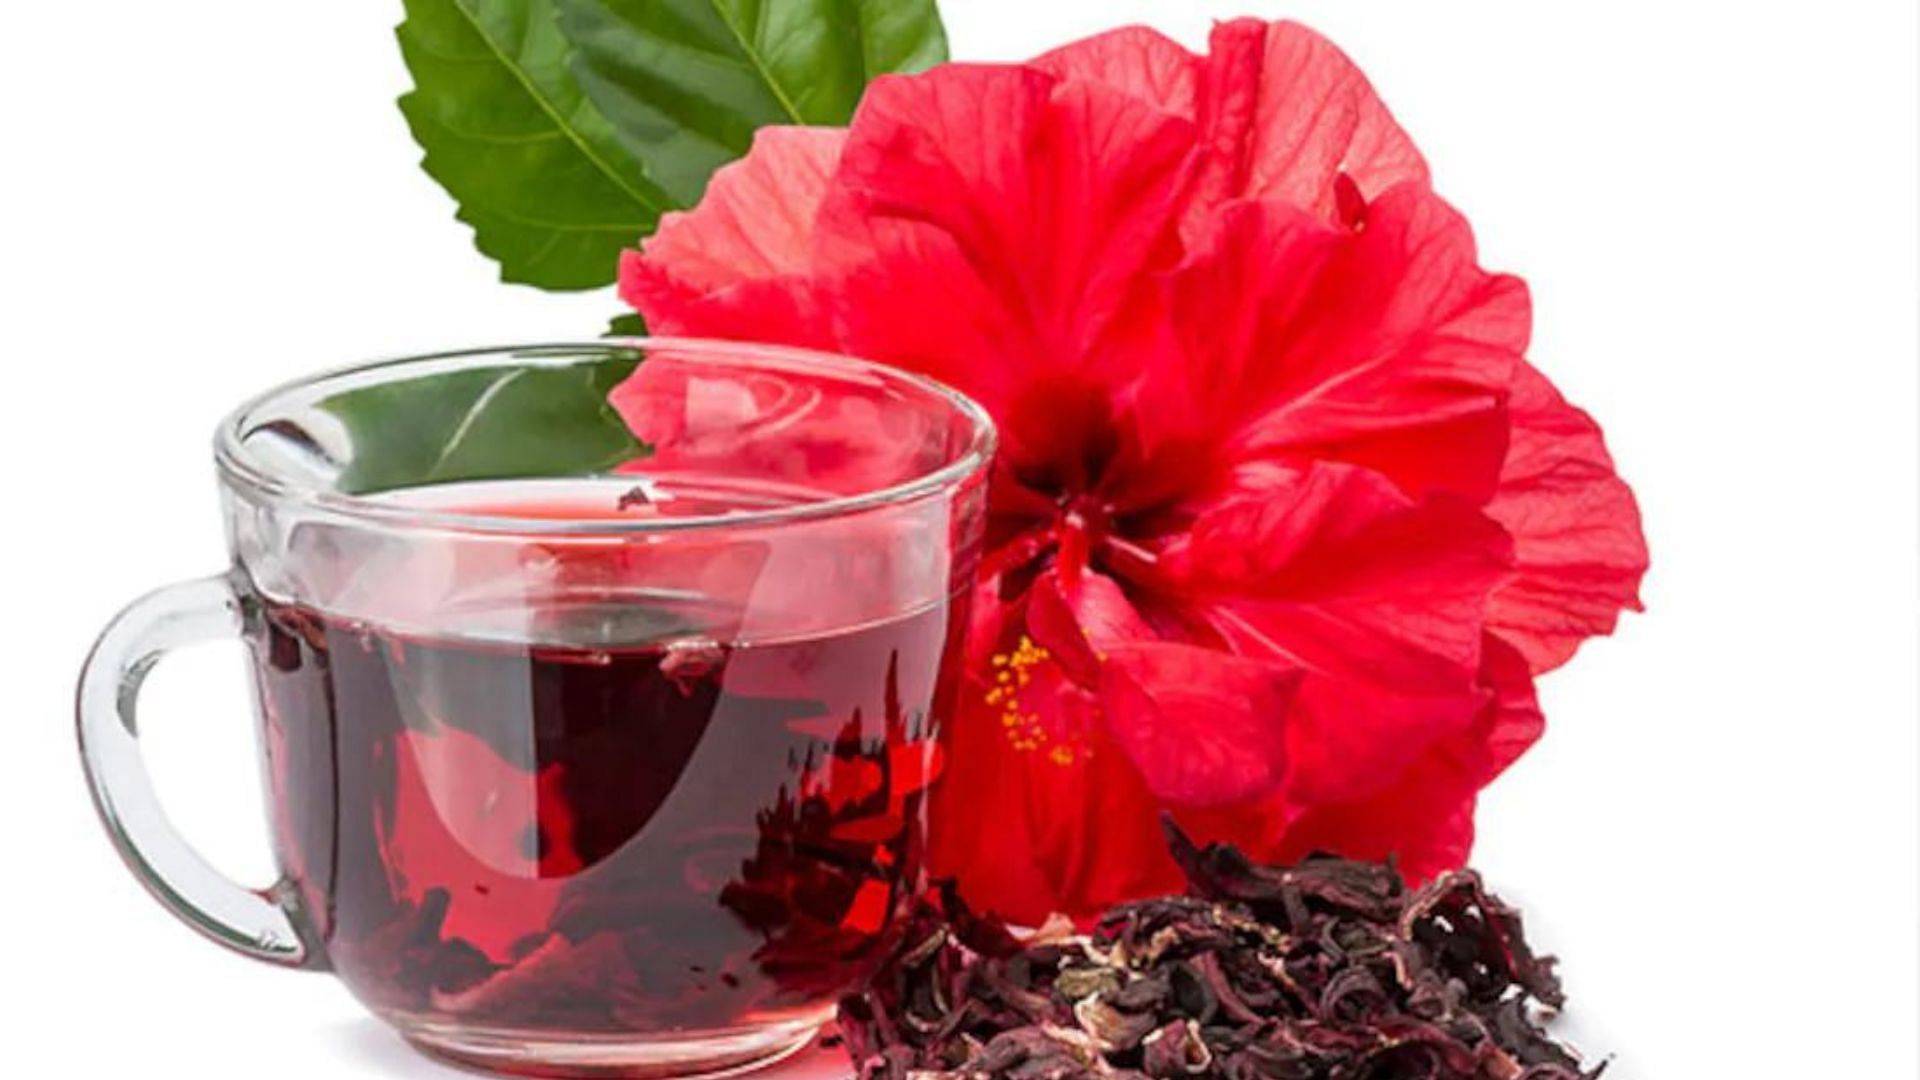 हिबिस्कस चाय विटामिन सी का समृद्ध स्रोत है!